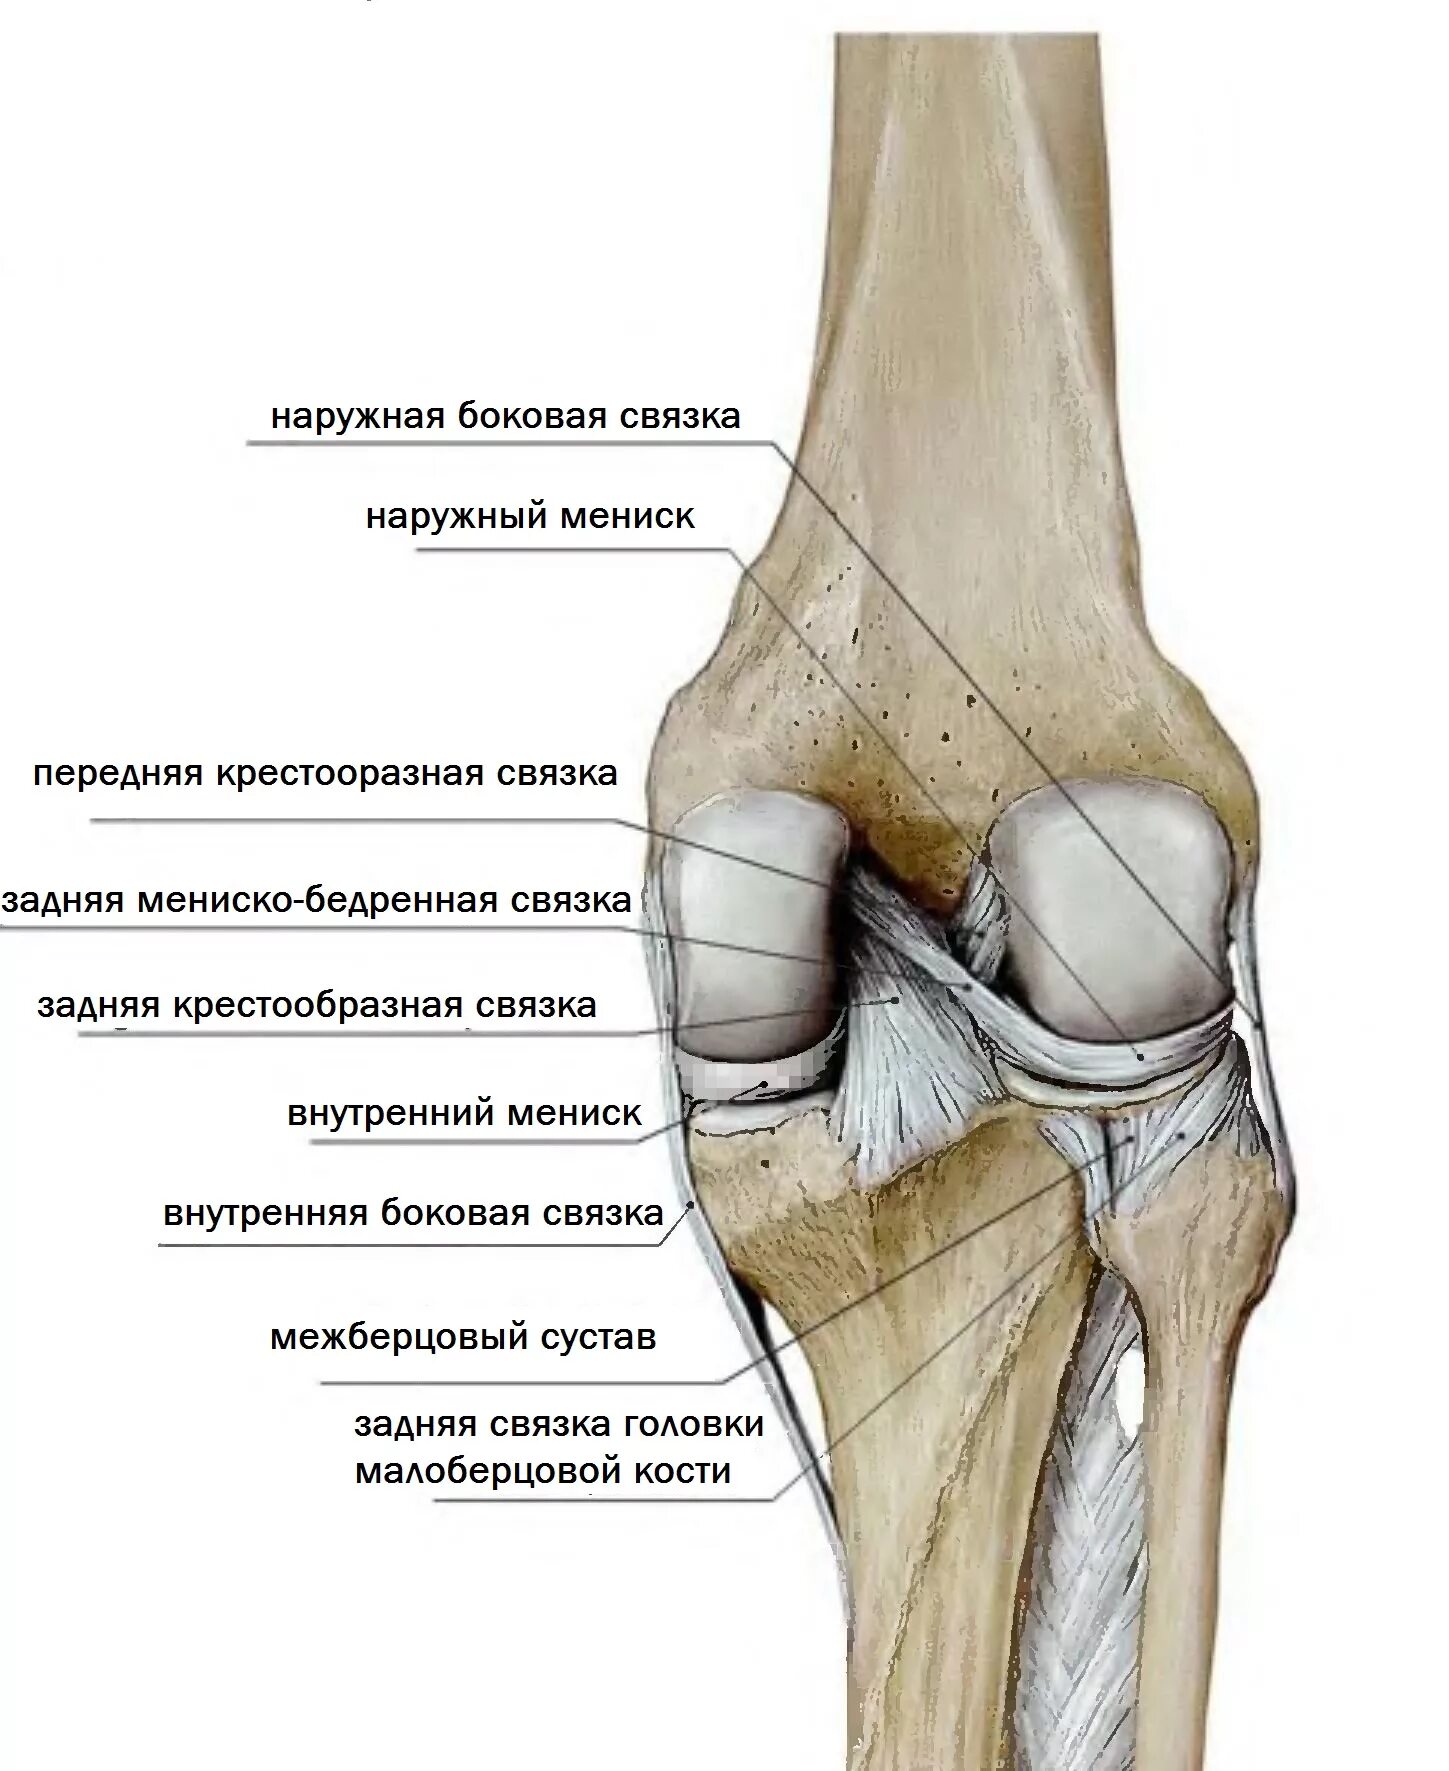 Суставная поверхность надколенника медиально. Большеберцовая кость и коленный сустав. Задняя связка головки малоберцовой кости. Коленный сустав малоберцовая кость.